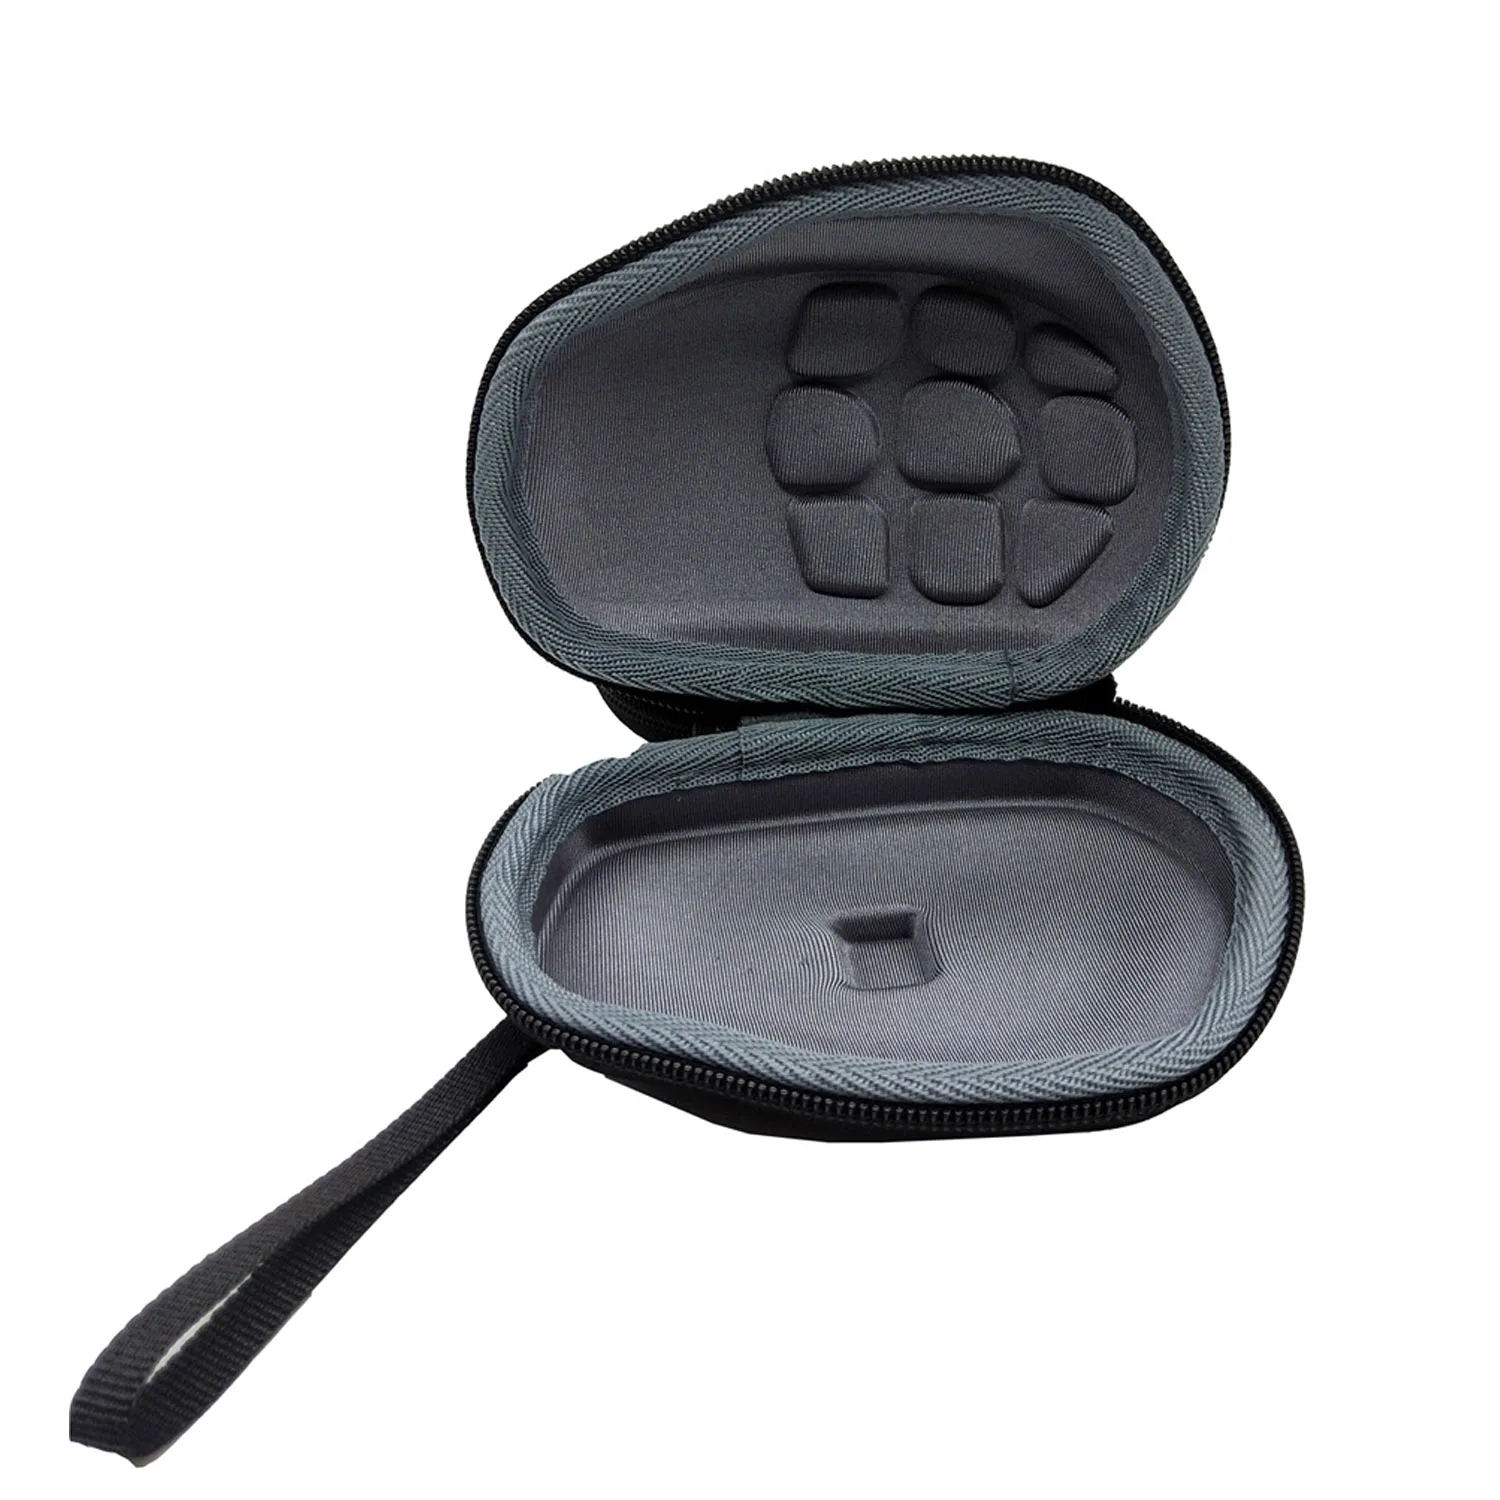 Besegad портативный ударопрочный чехол для кабеля, для хранения, защитная сумка-чехол, чехол для lotech MX Master/MX Master 2 S mouse